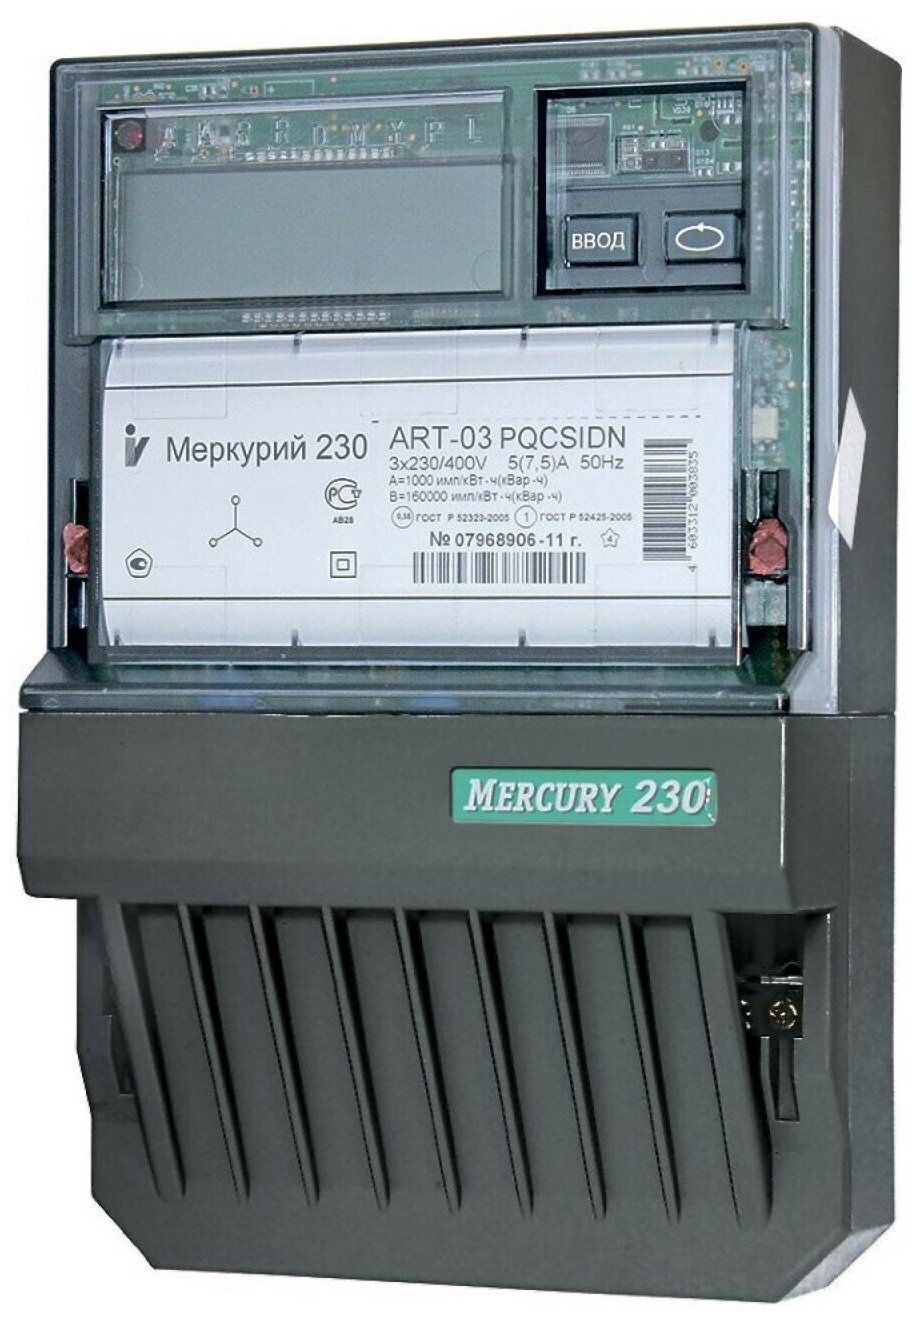 Счетчик электроэнергии Меркурий 230 ART-03 PQRSIDN